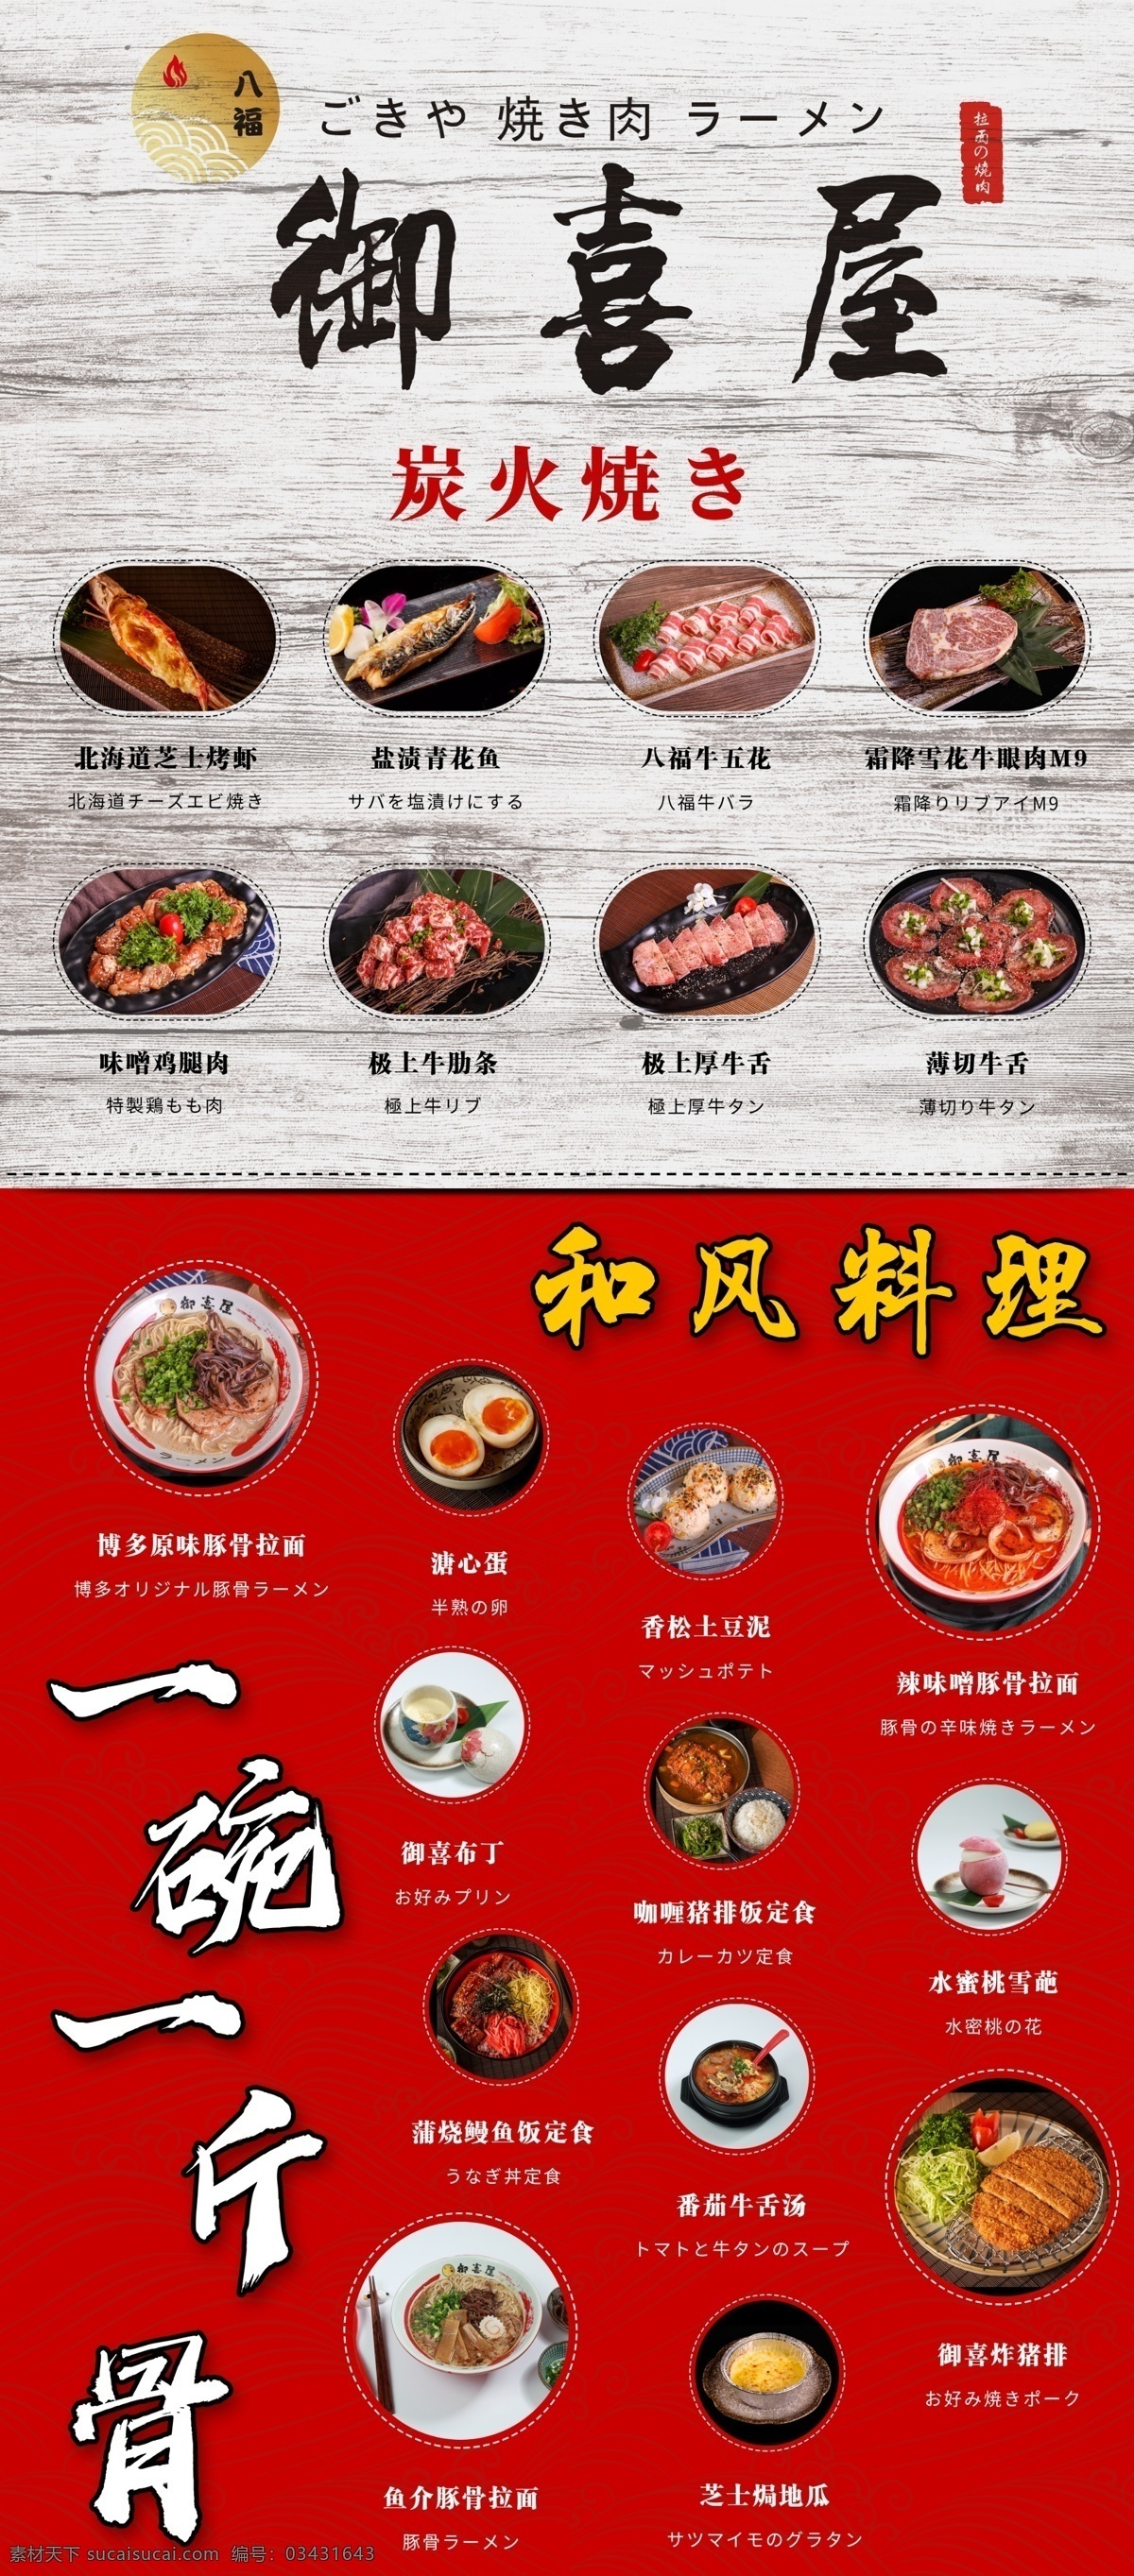 日式 和风 料理 餐饮 烧烤 烤肉 面馆 面条 菜单 菜谱 展架 易拉宝 海报 炭烤 菜单菜谱